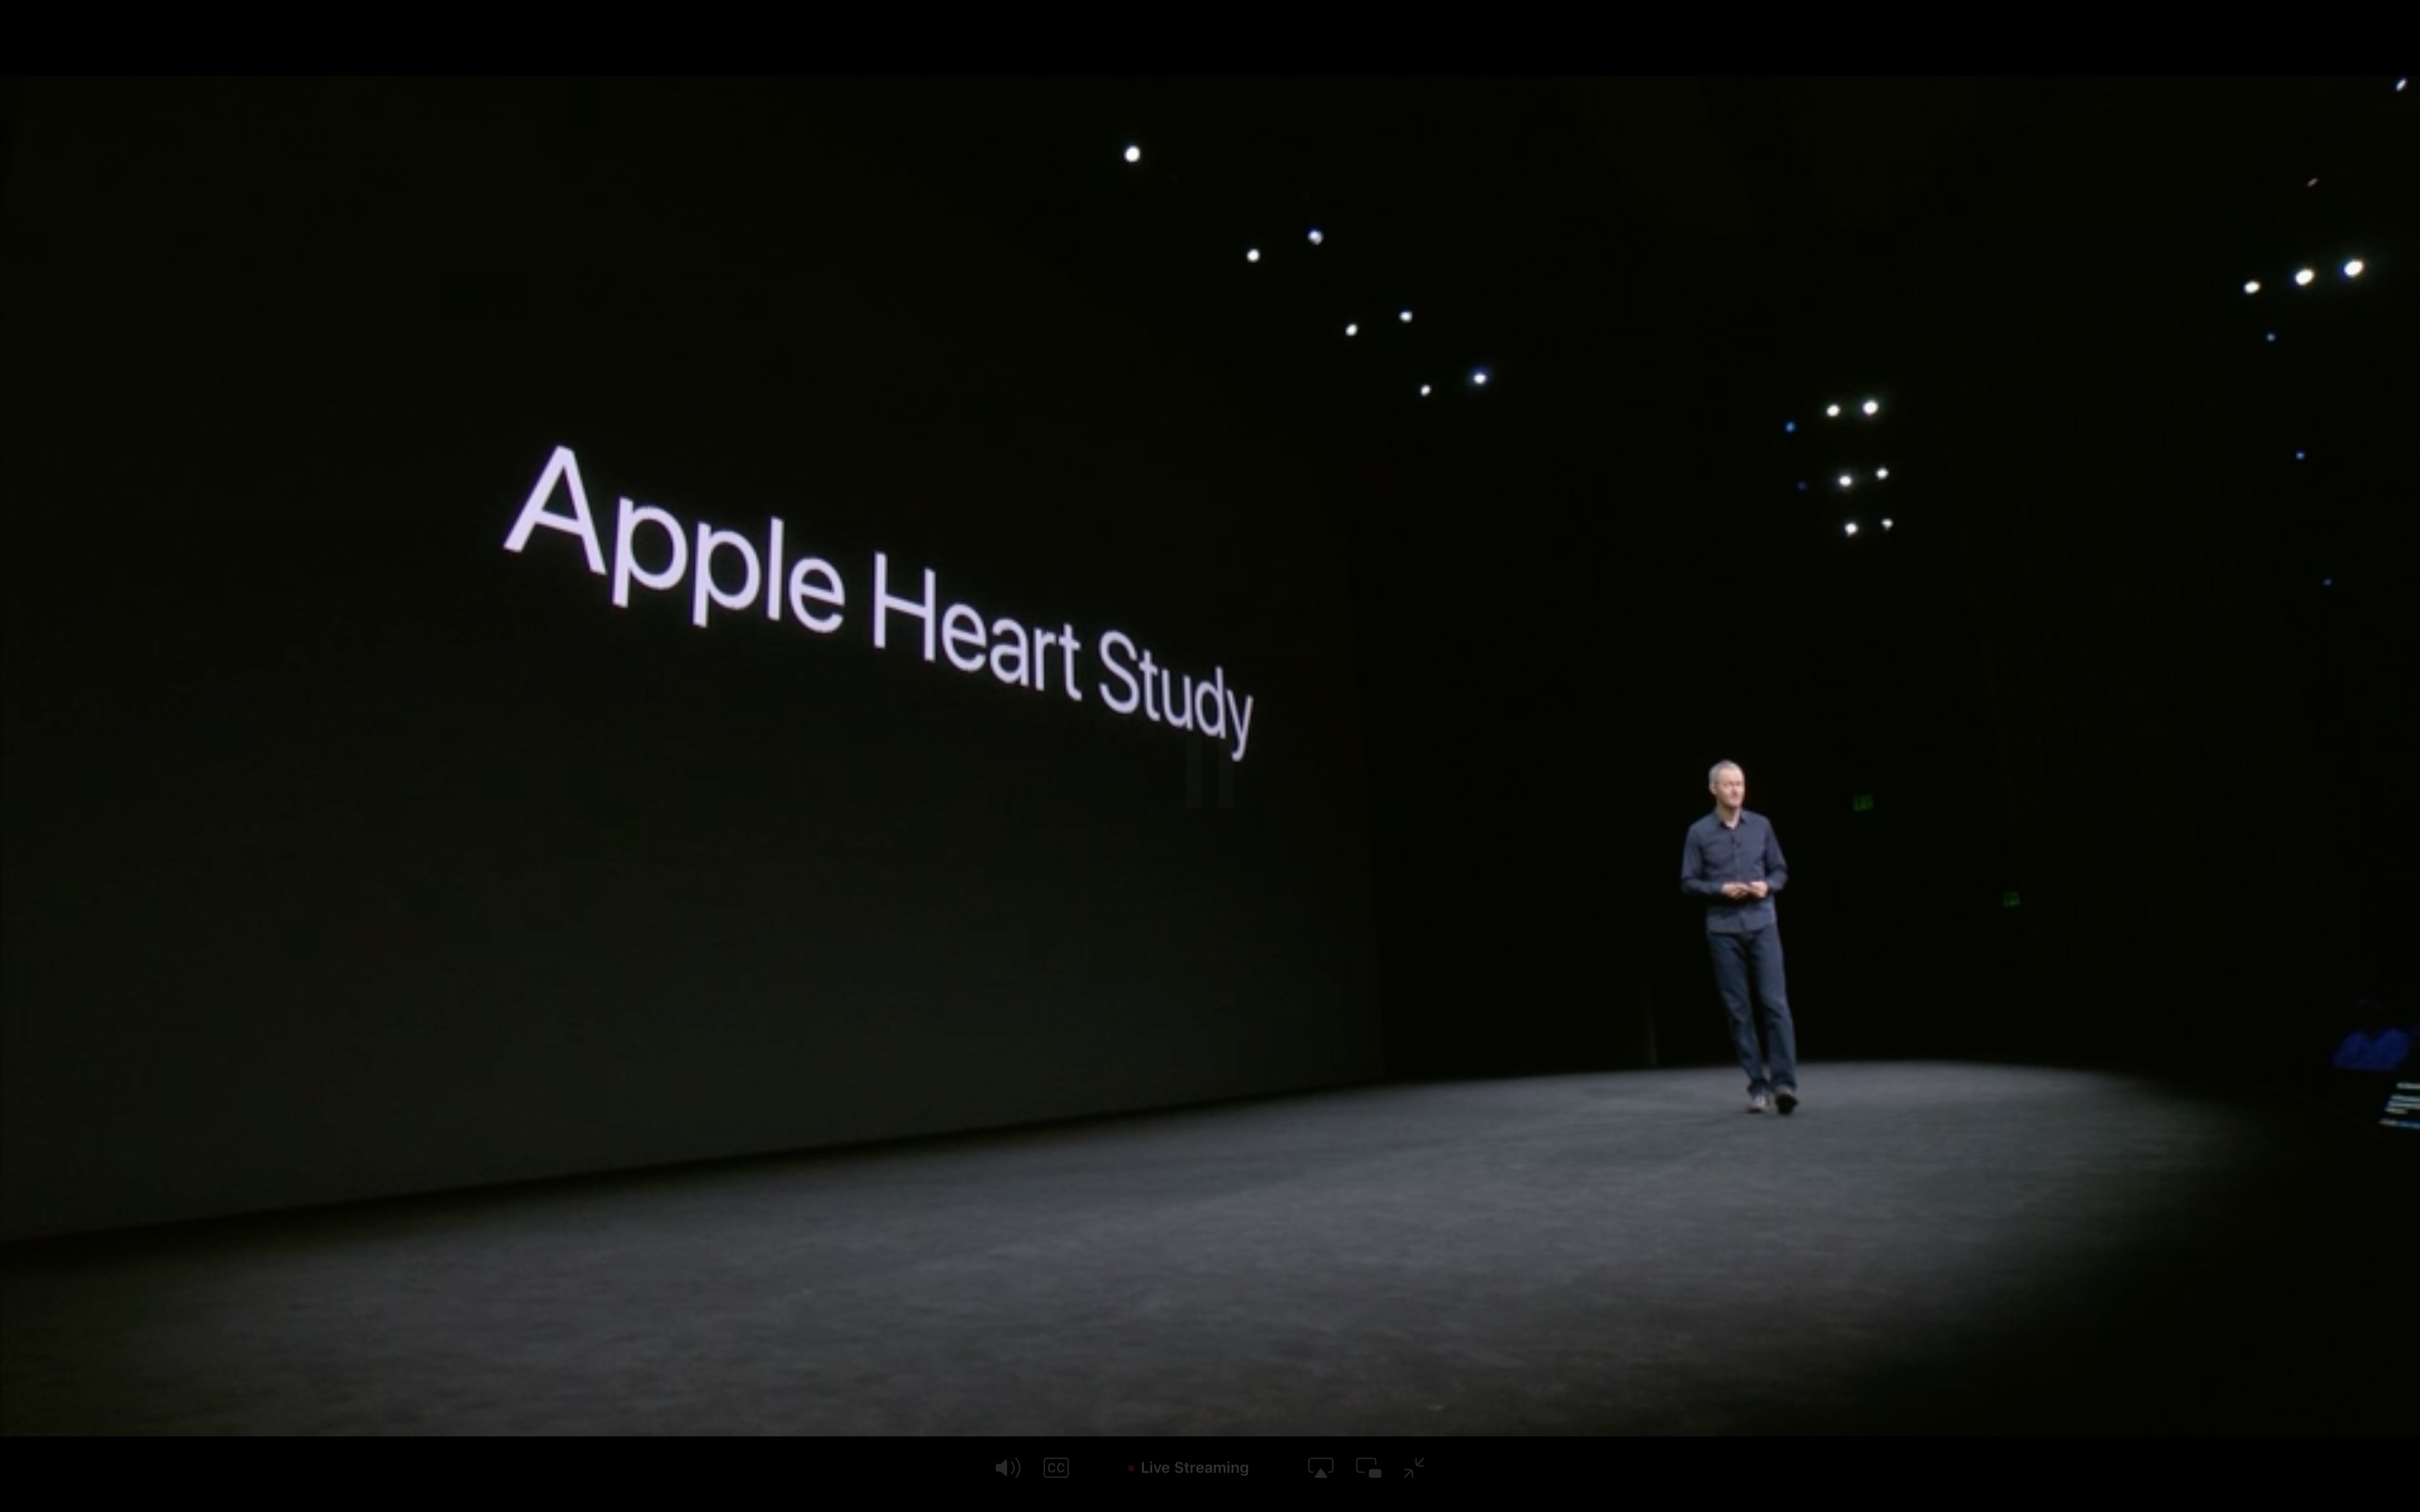 Apple-Watch-Series-3-Image4.jpg